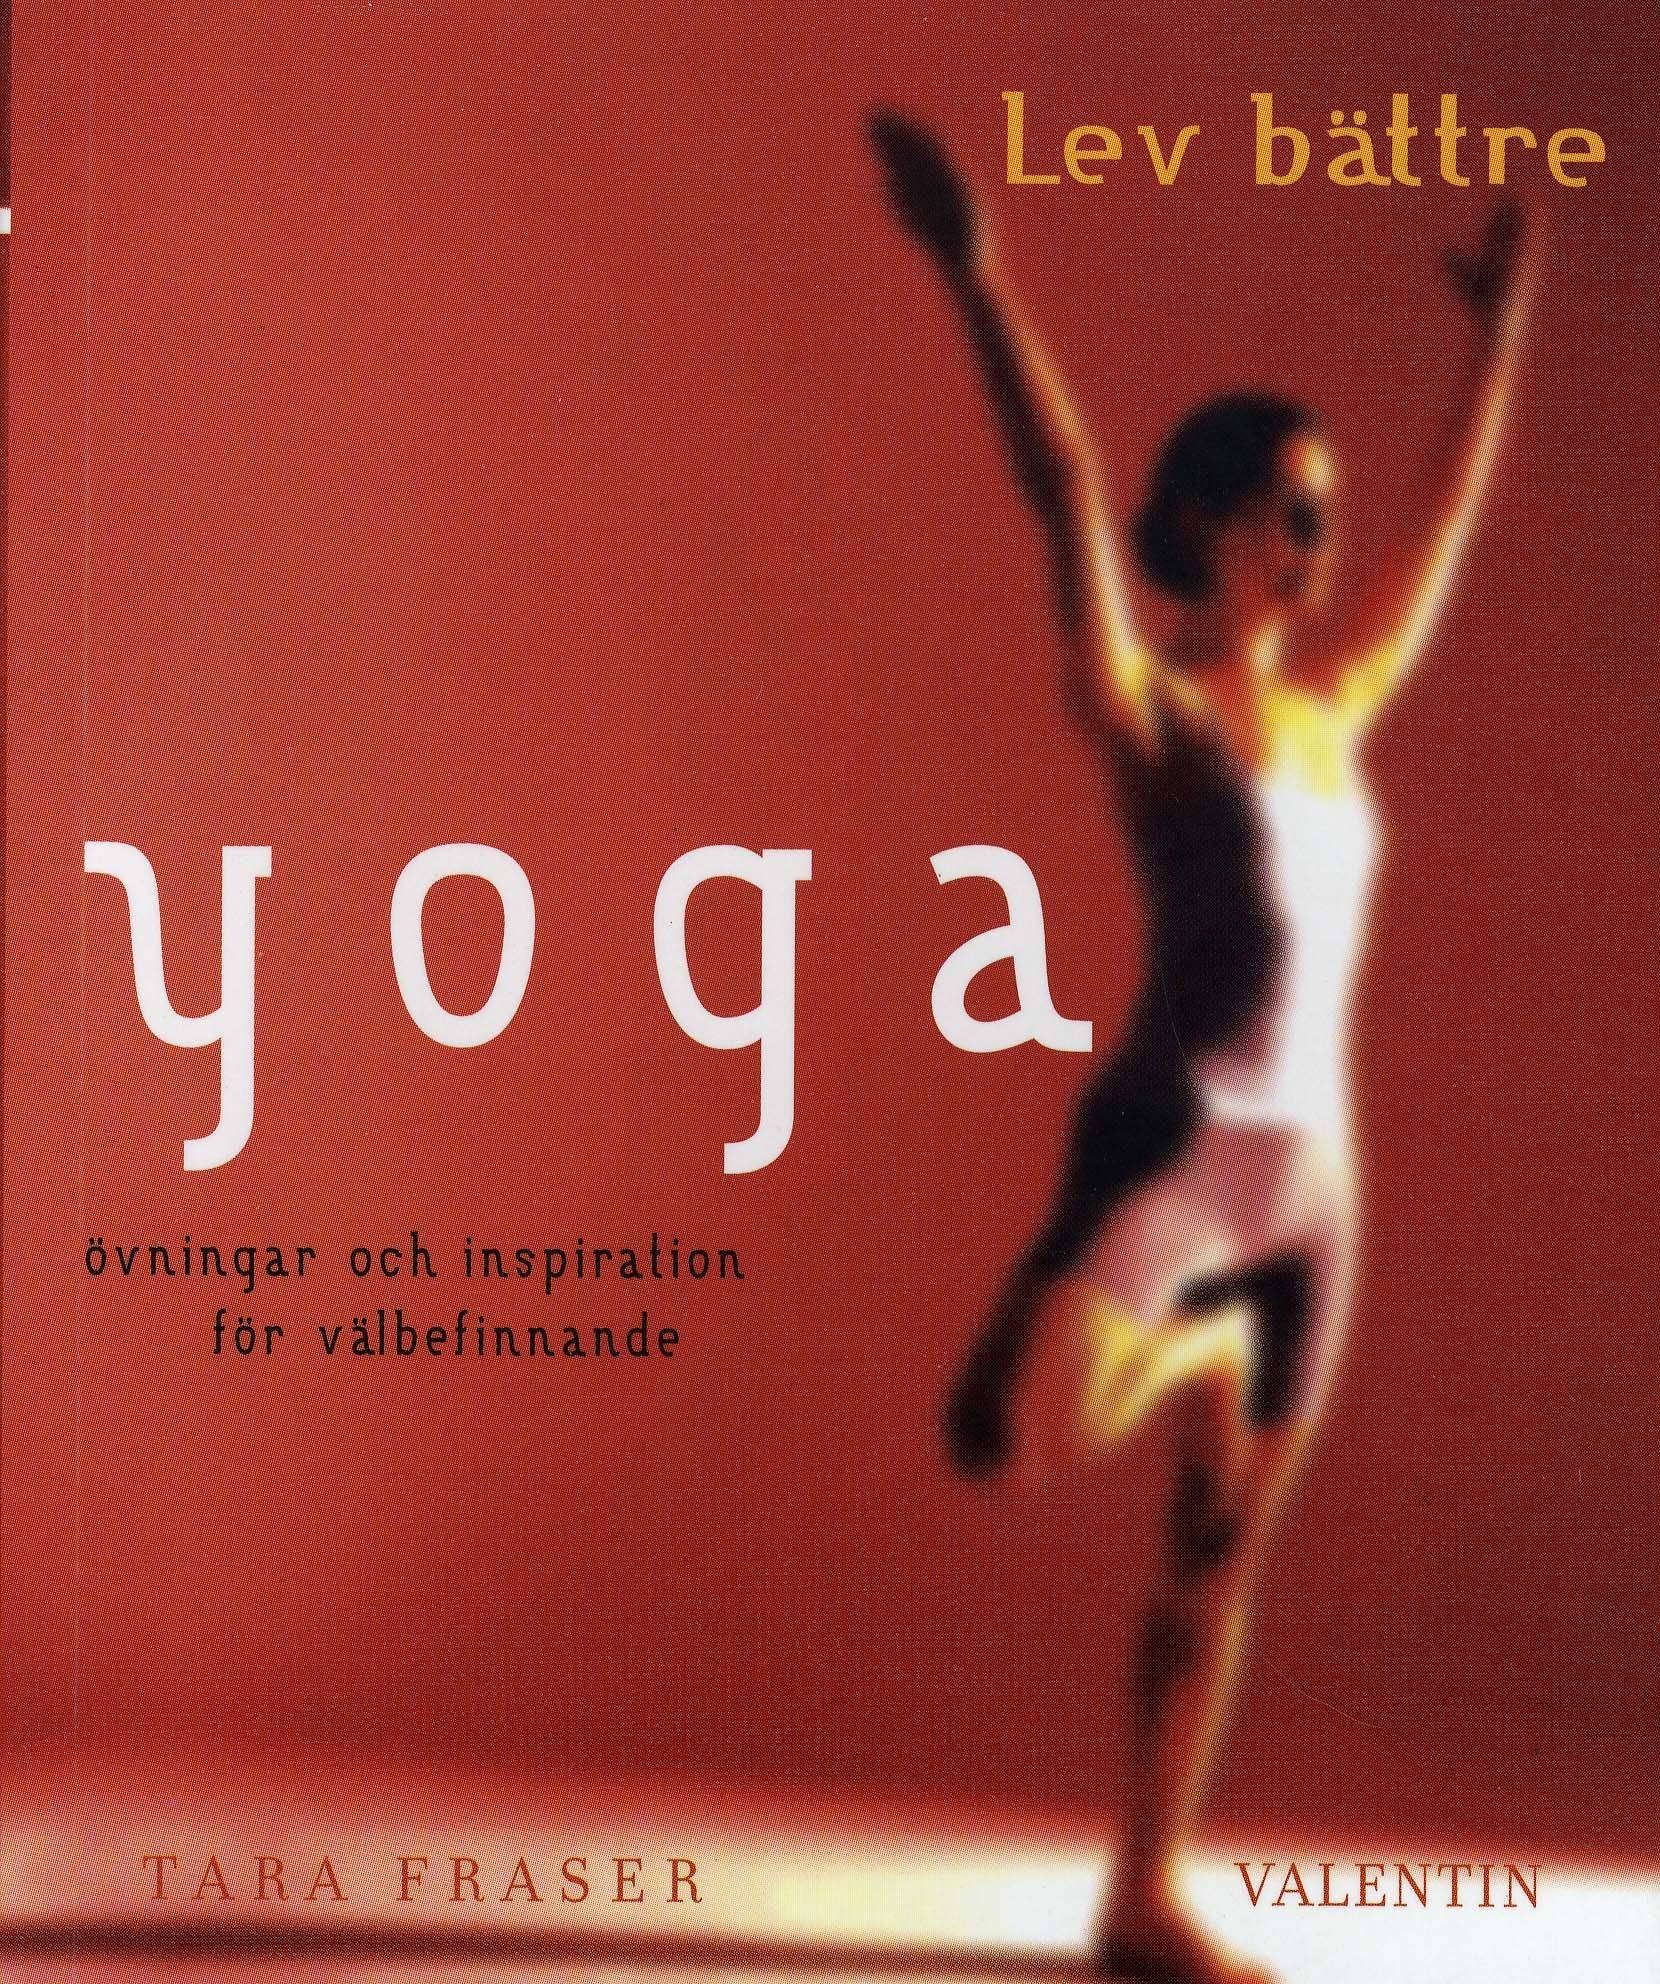 Yoga : övningar och inspiration för välbefinnande